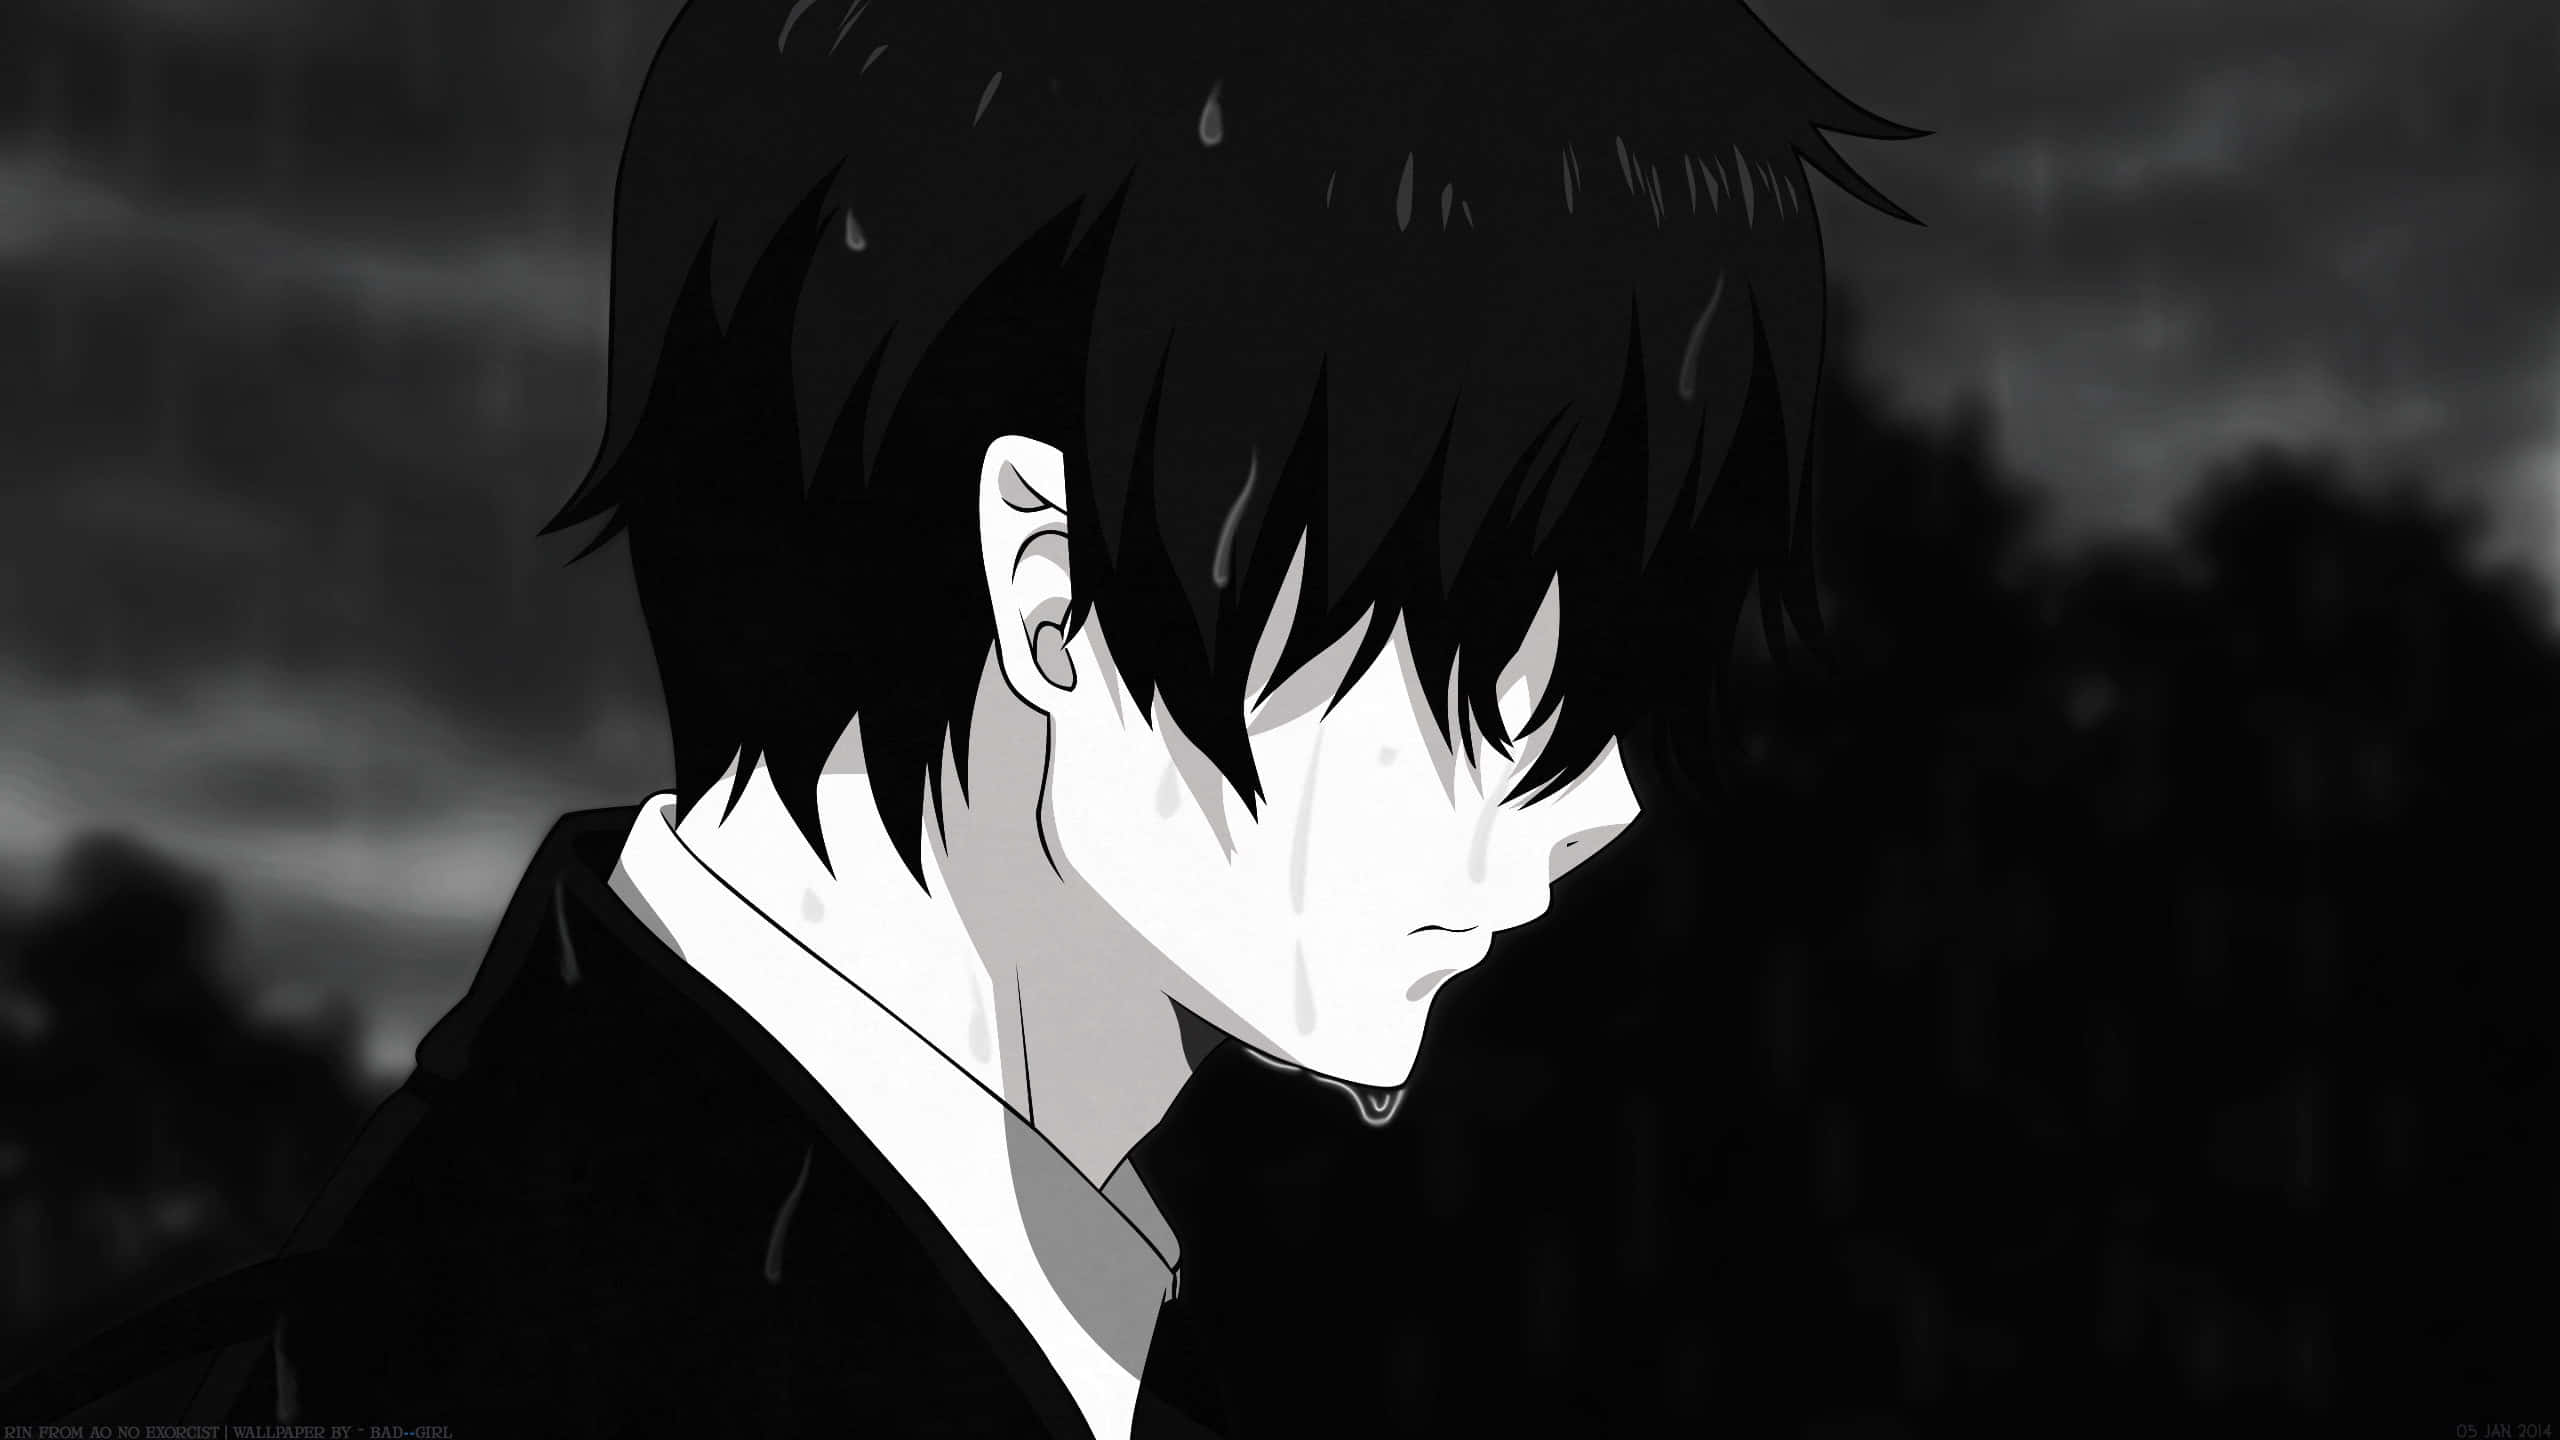 300+] Sad Anime Boy Pictures